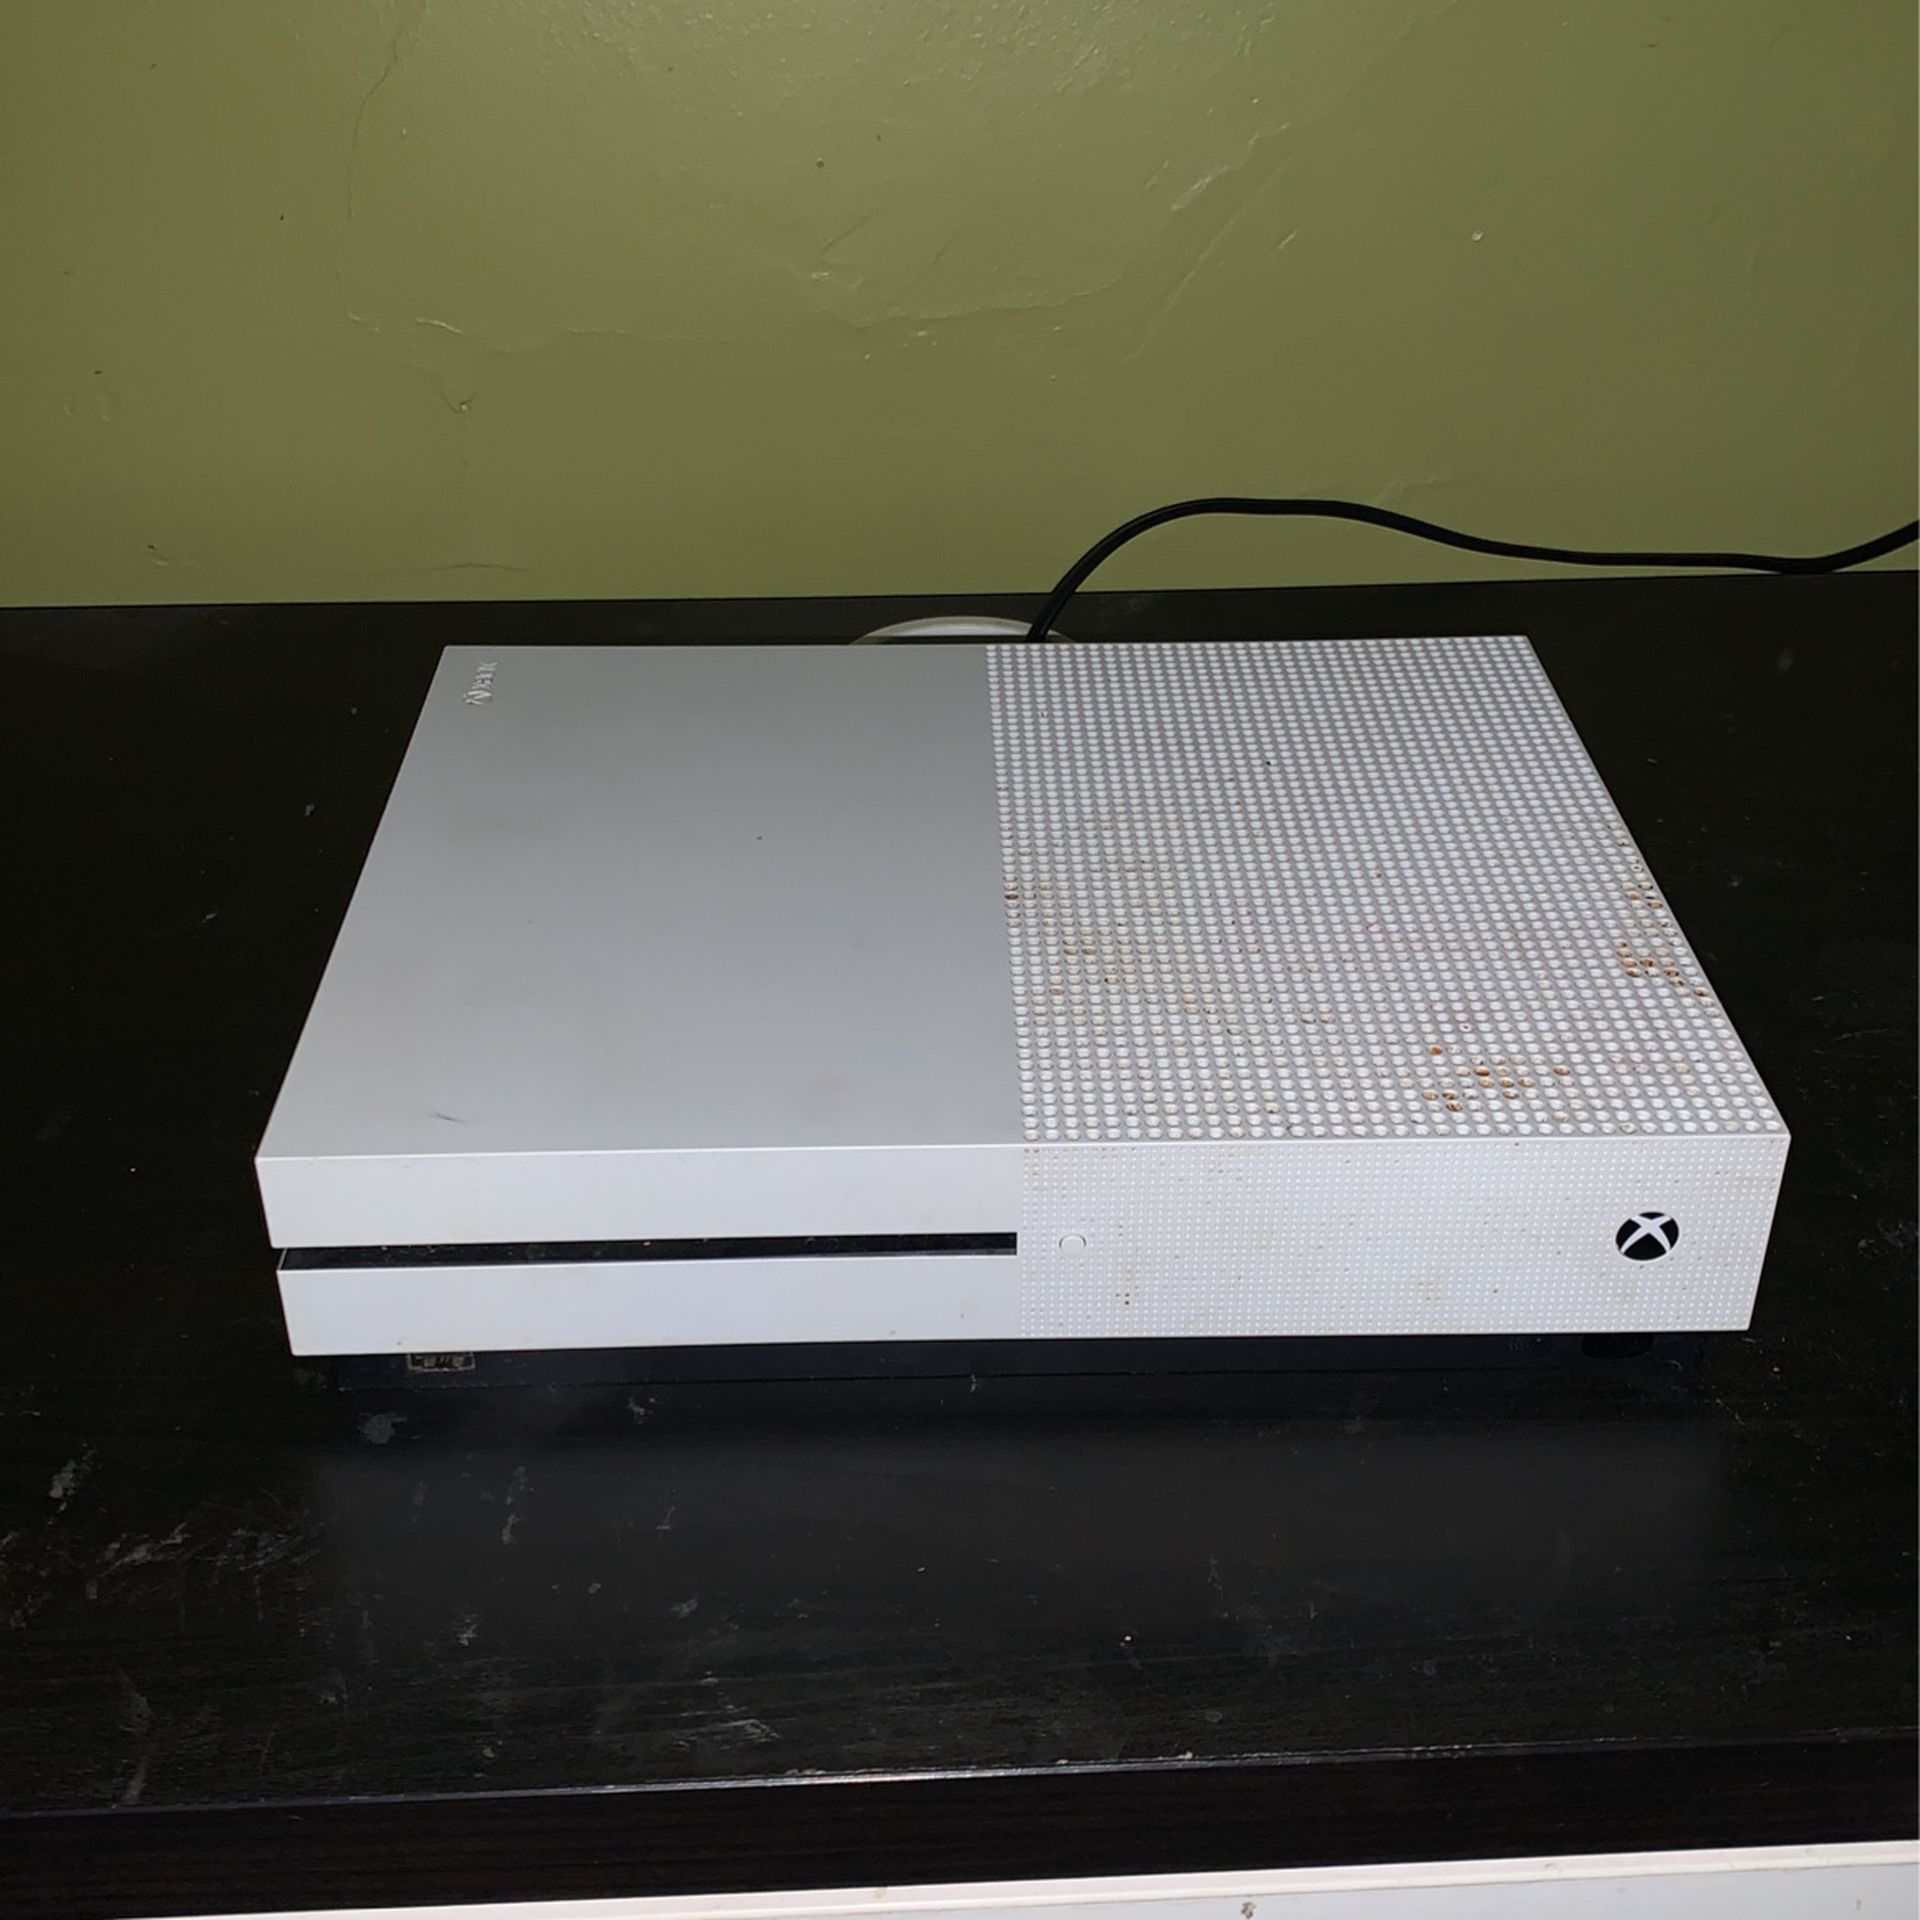  Xbox One S